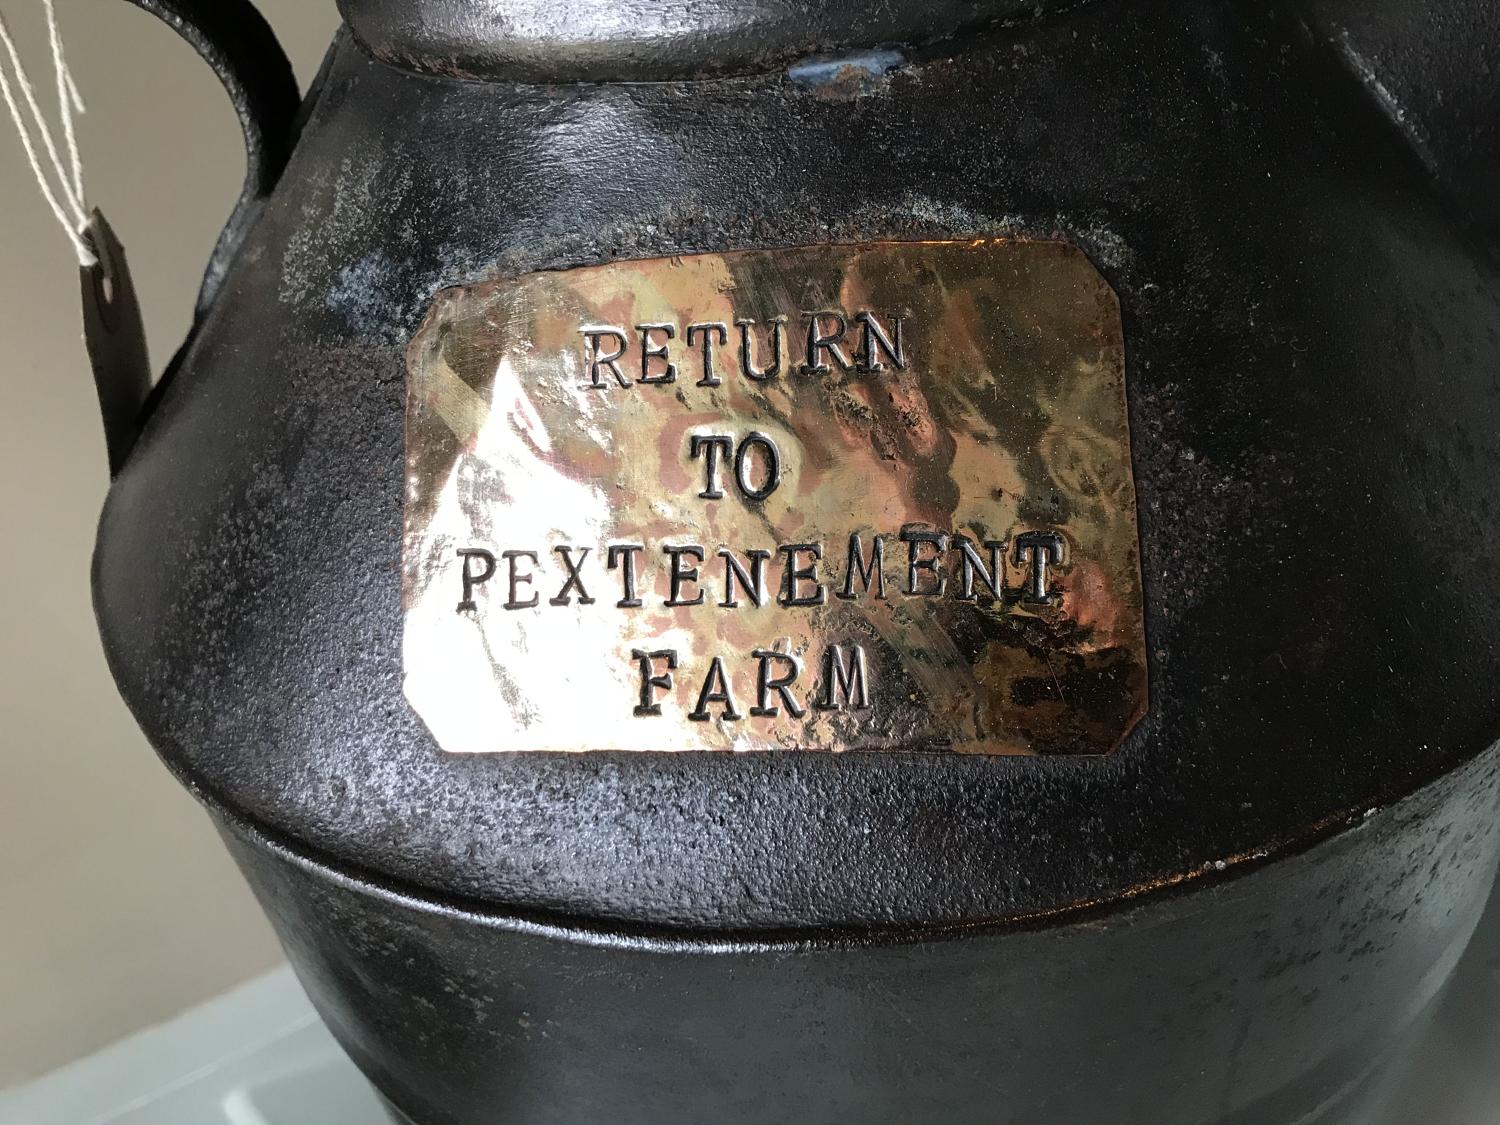 Antique Pextenement Farm Milk Can